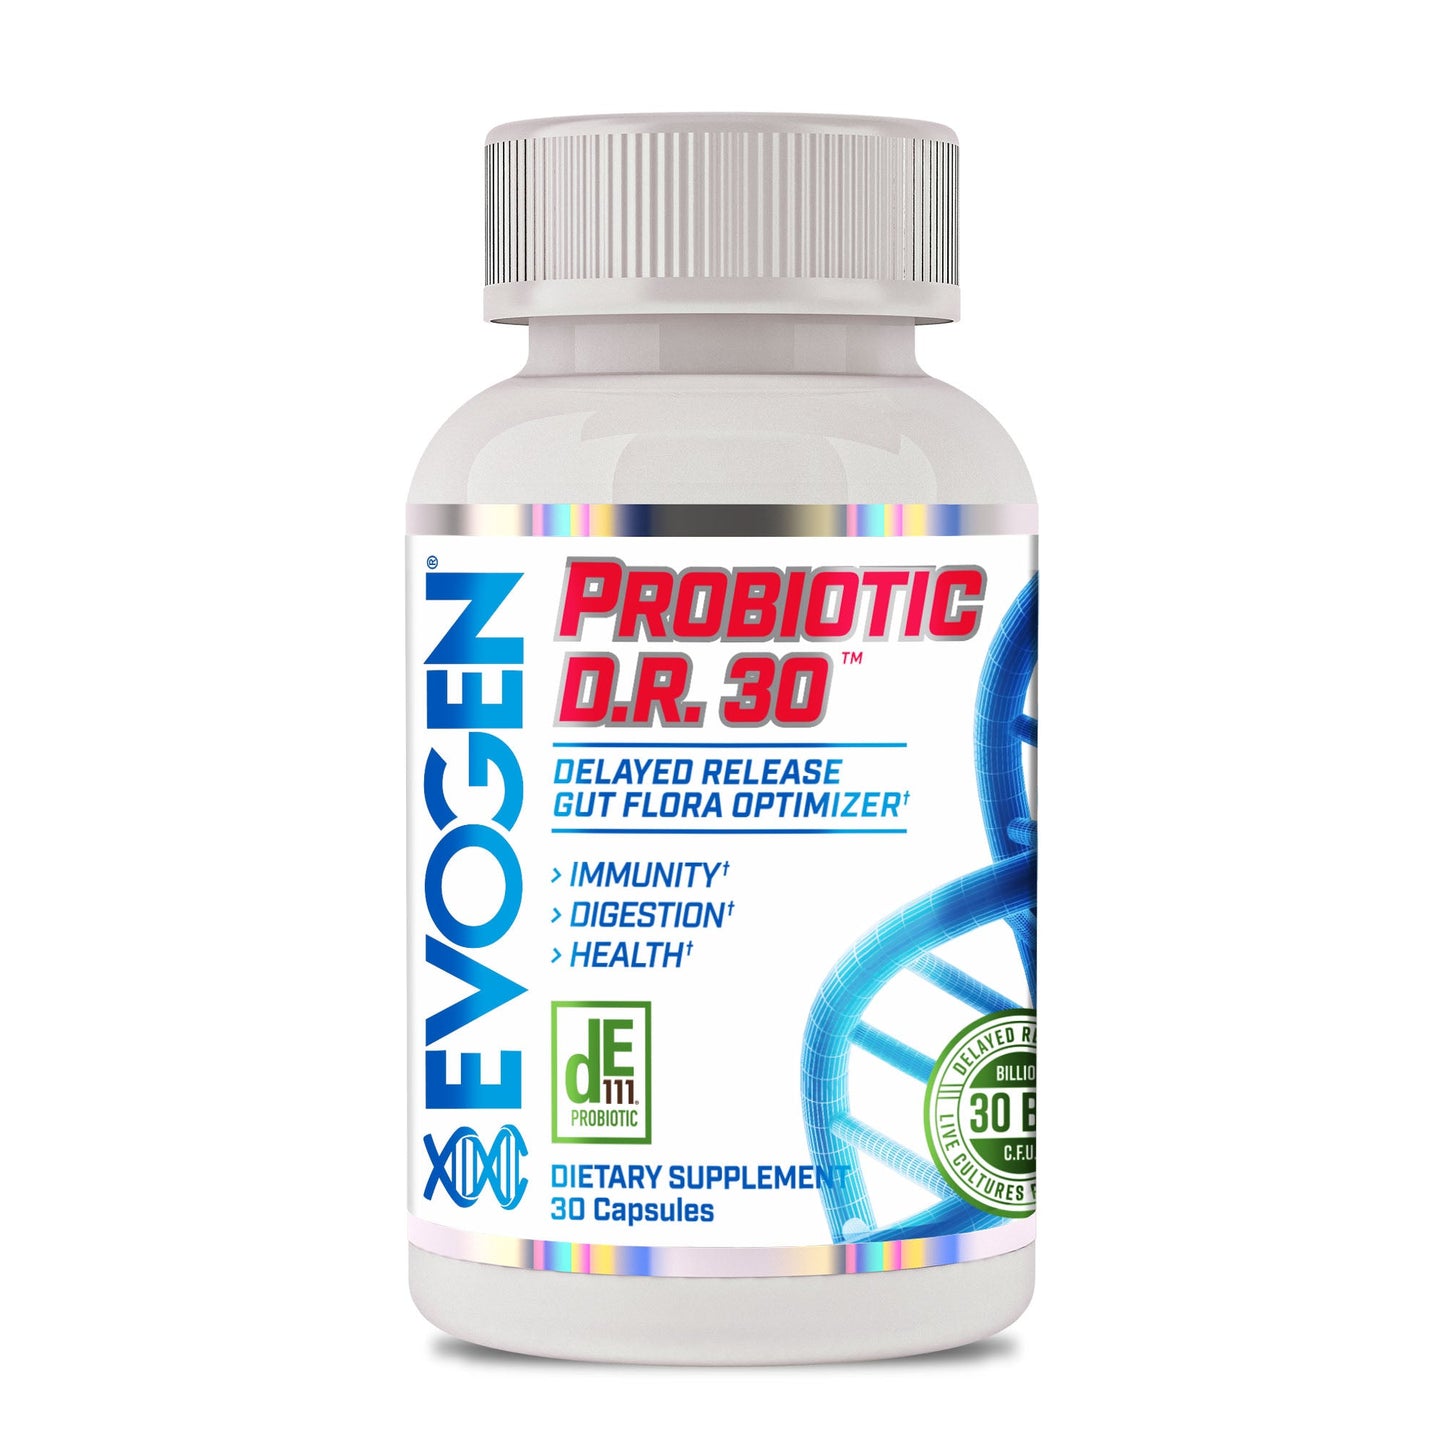 Probiotic DR 30